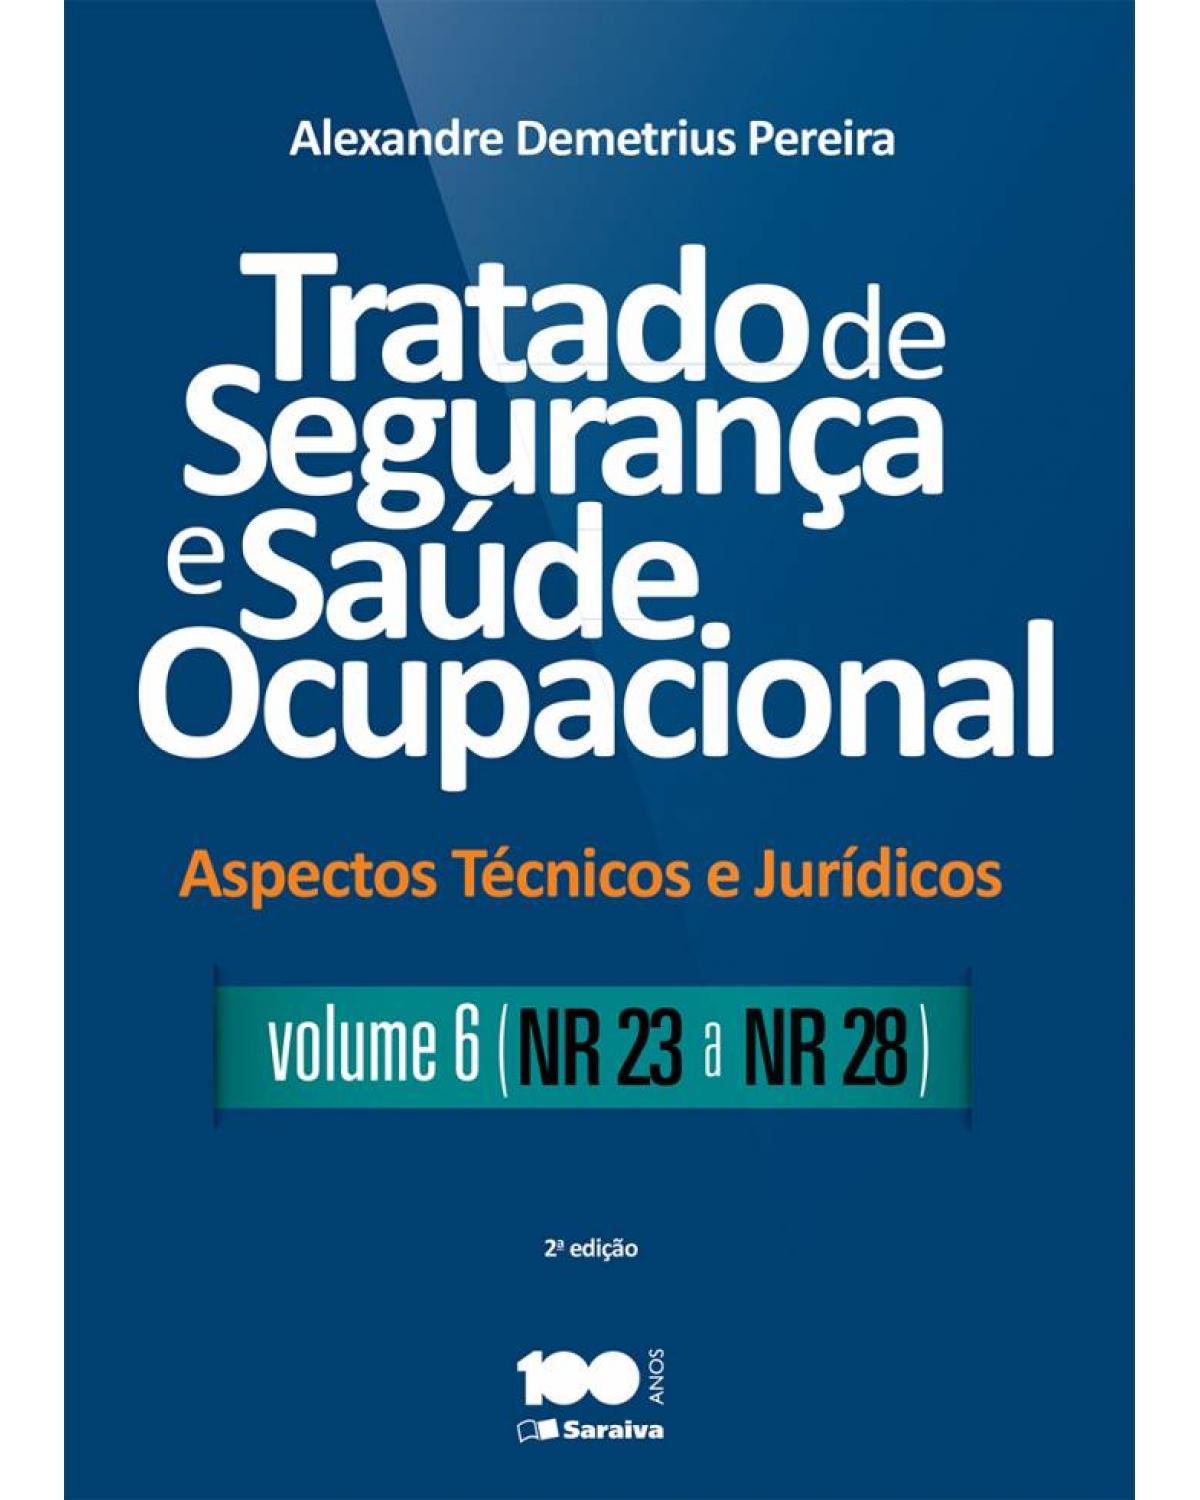 Tratado de segurança e saúde ocupacional - Volume 6: aspectos técnicos e jurídicos - NR 23 a NR 28 - 2ª Edição | 2015